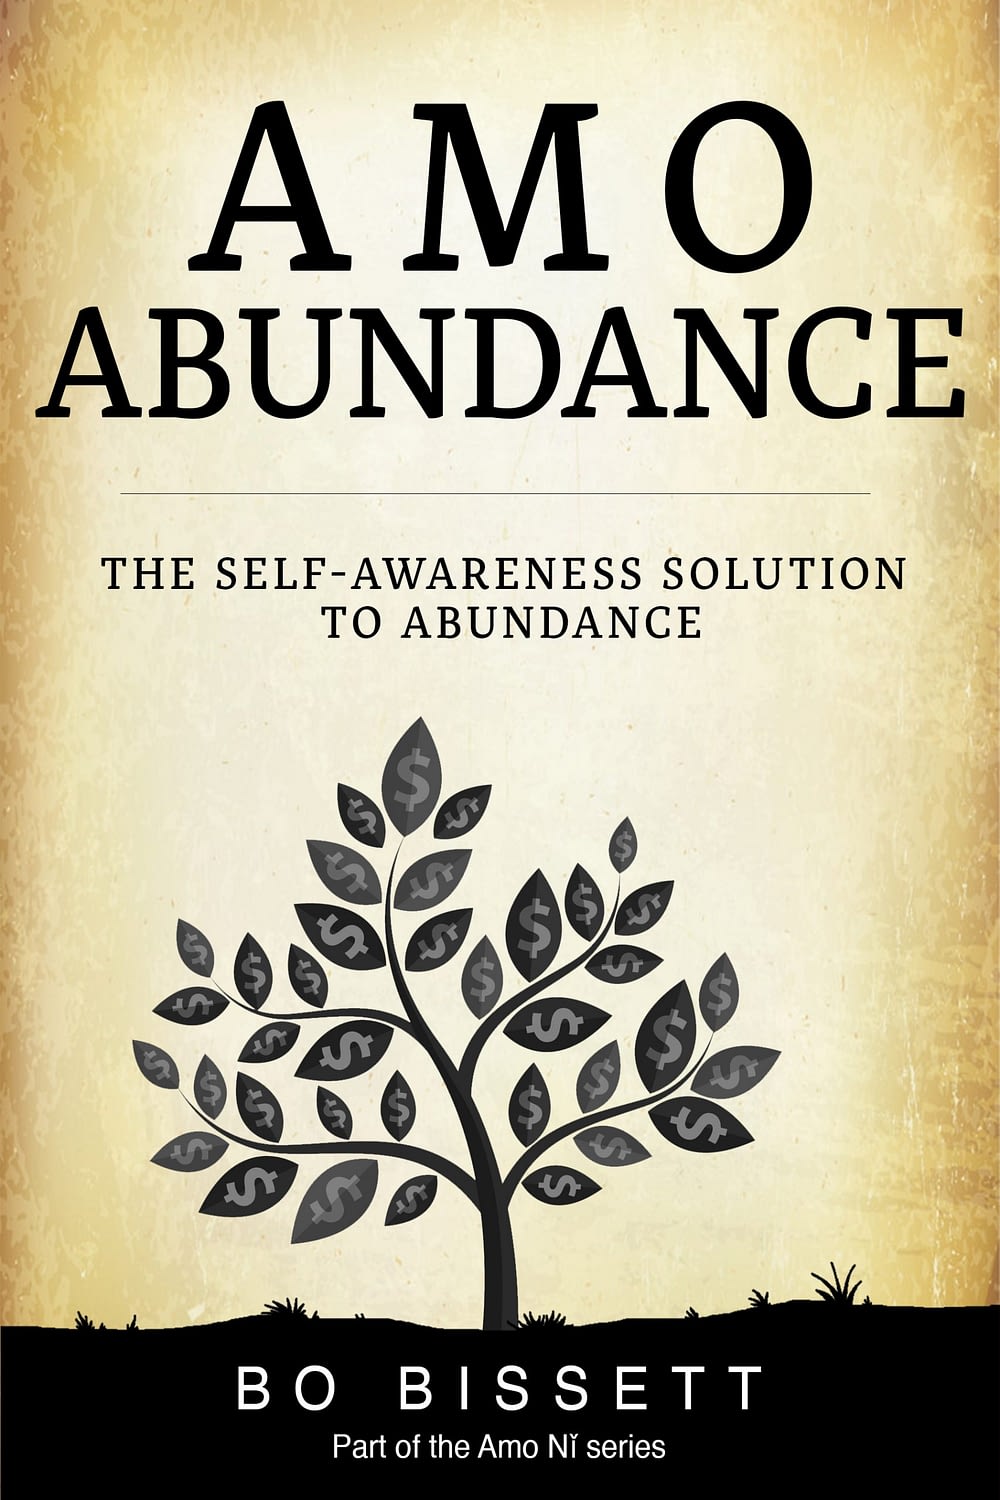 Self-Awareness Solution to Abundance